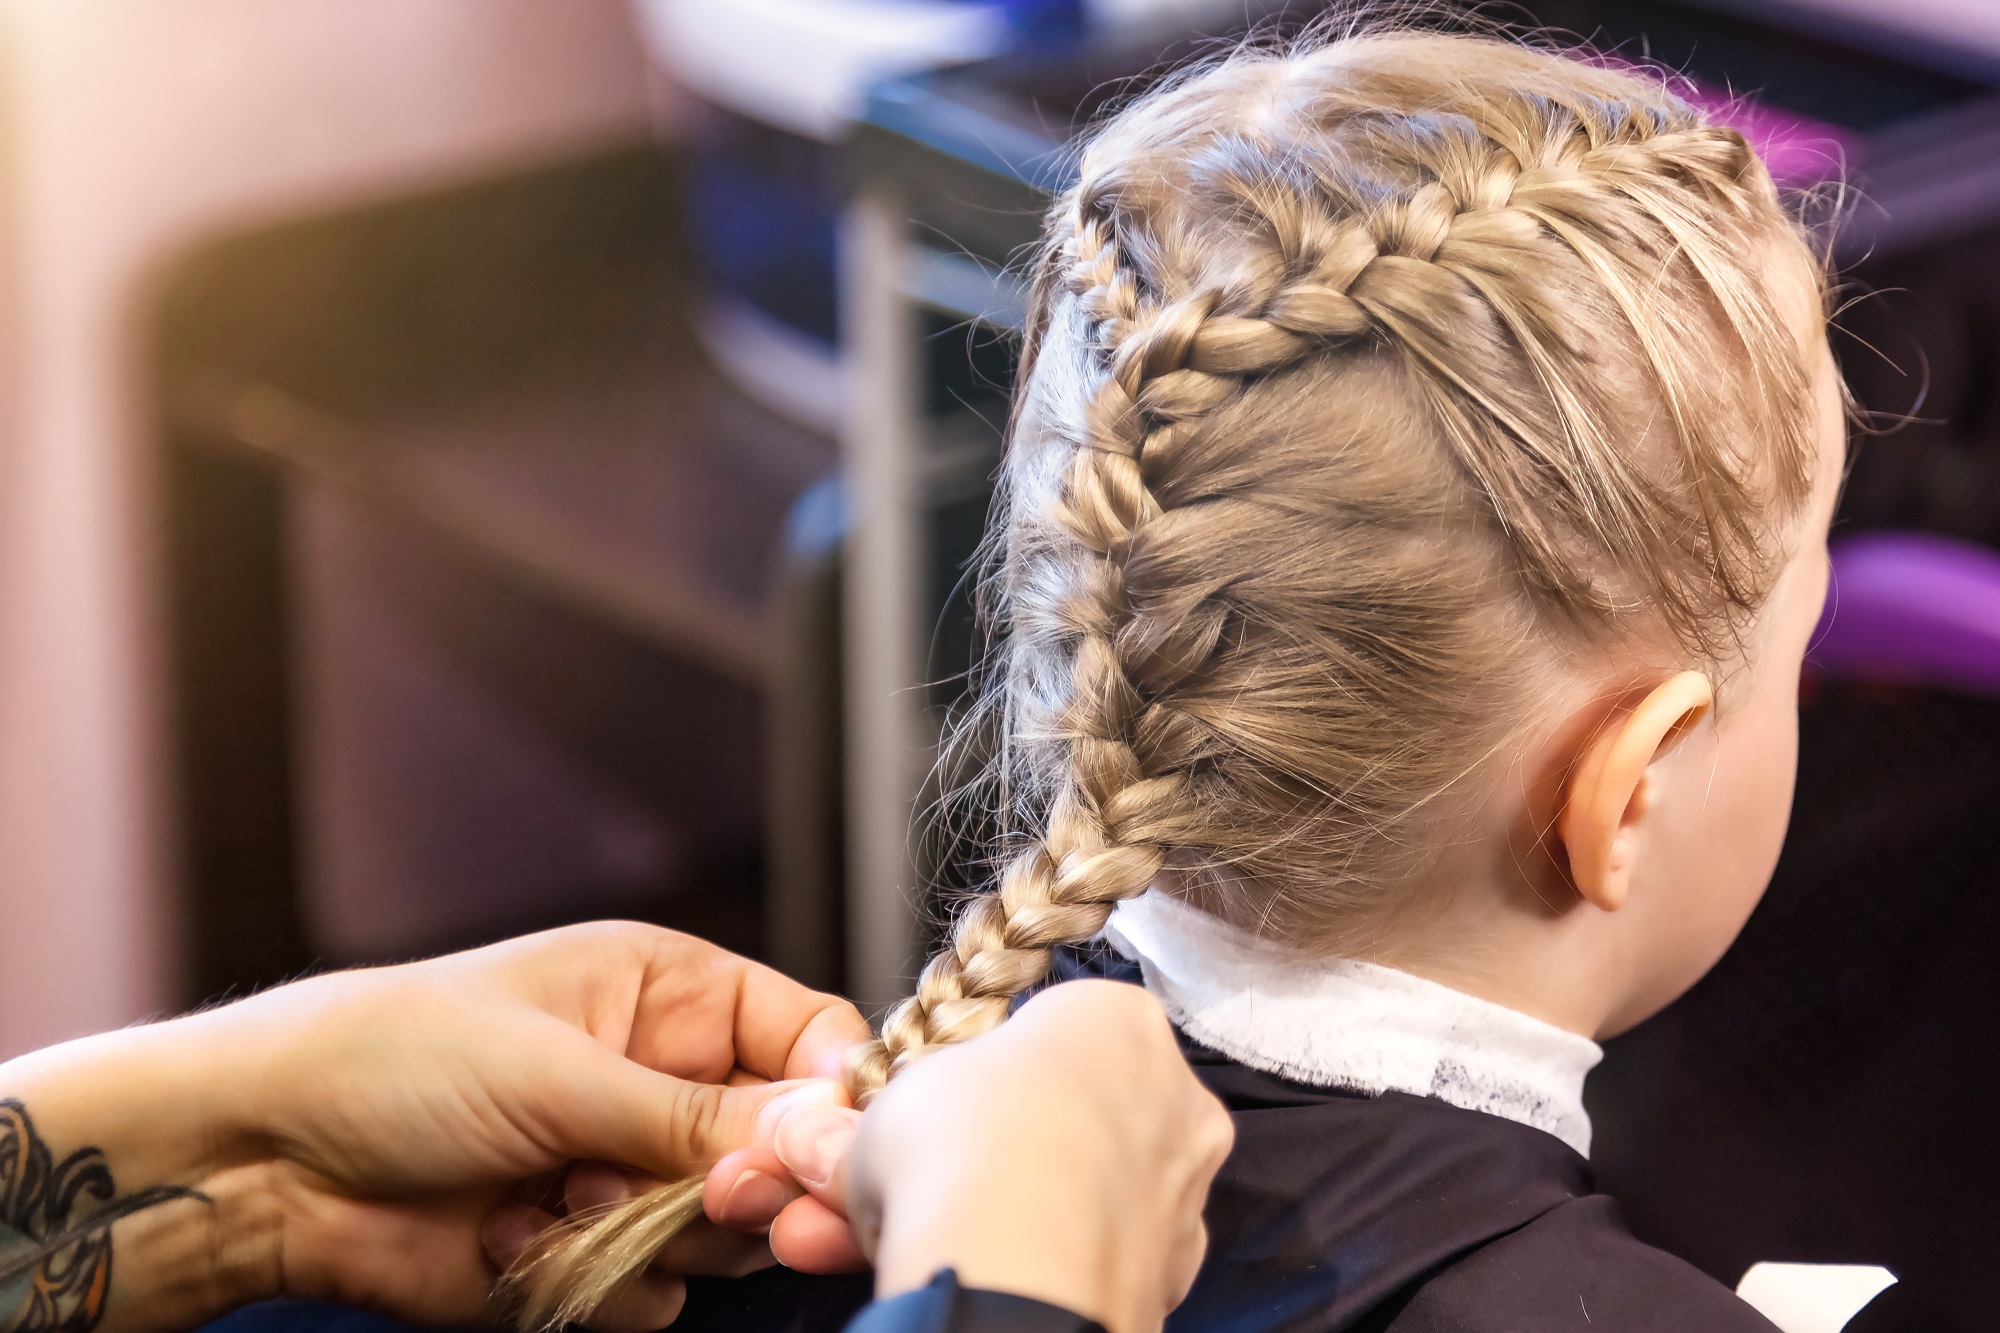 Estes 9 perfis ensinam penteados incríveis para fazer nas crianças!